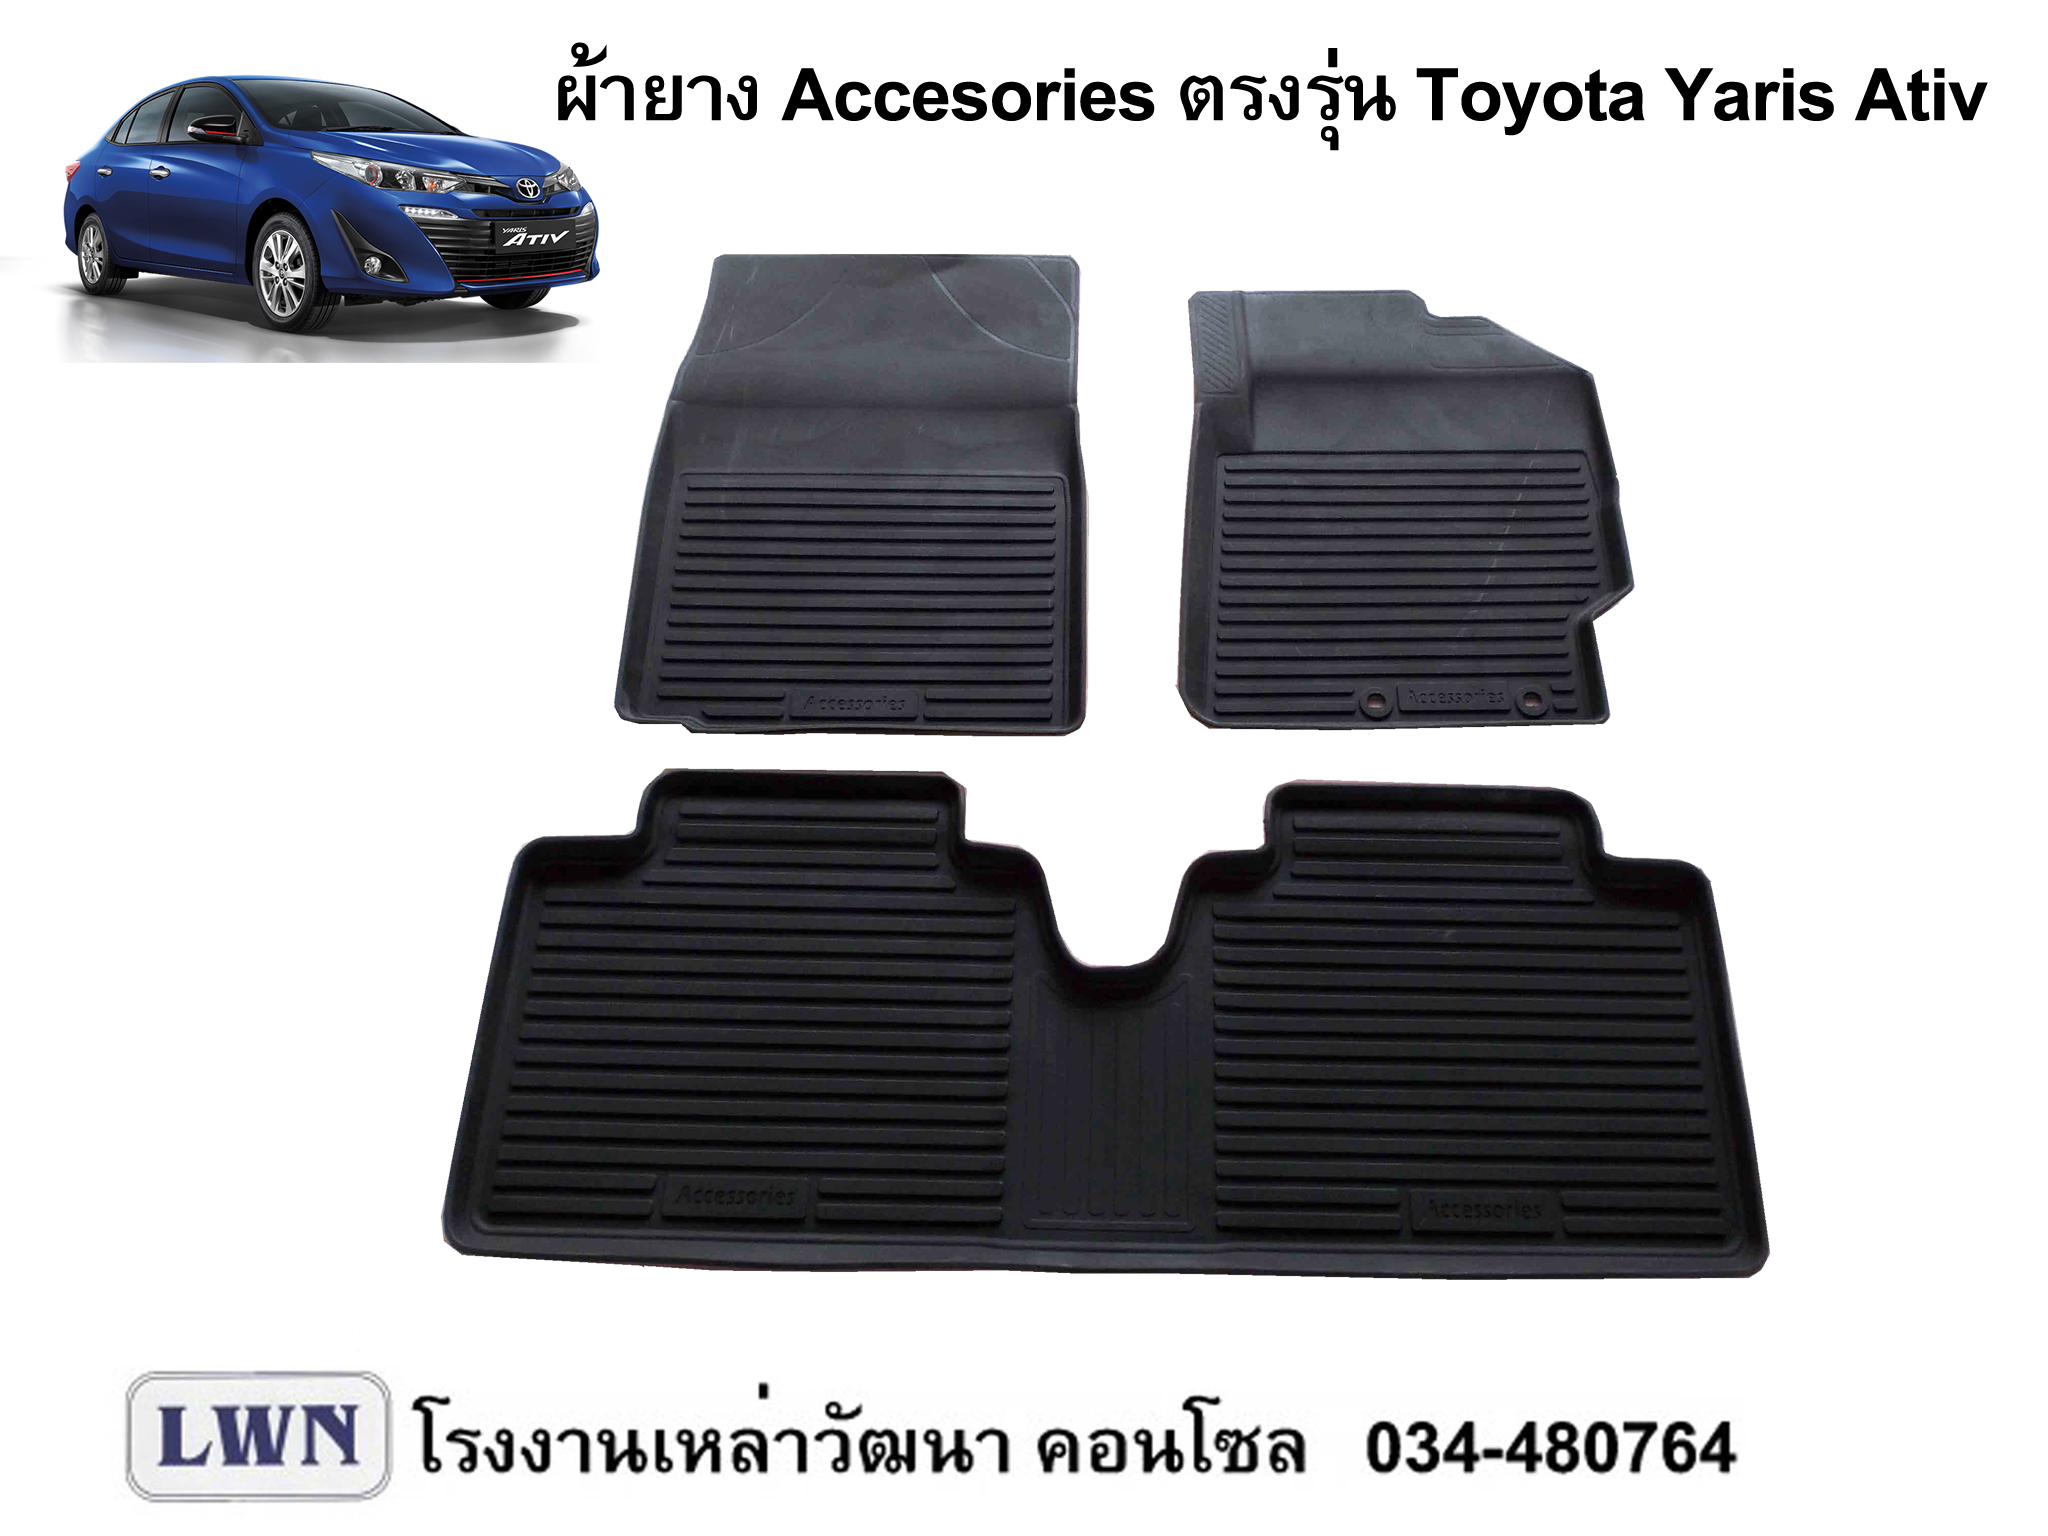 ผ้ายางปูพื้น Toyota Yaris Ativ